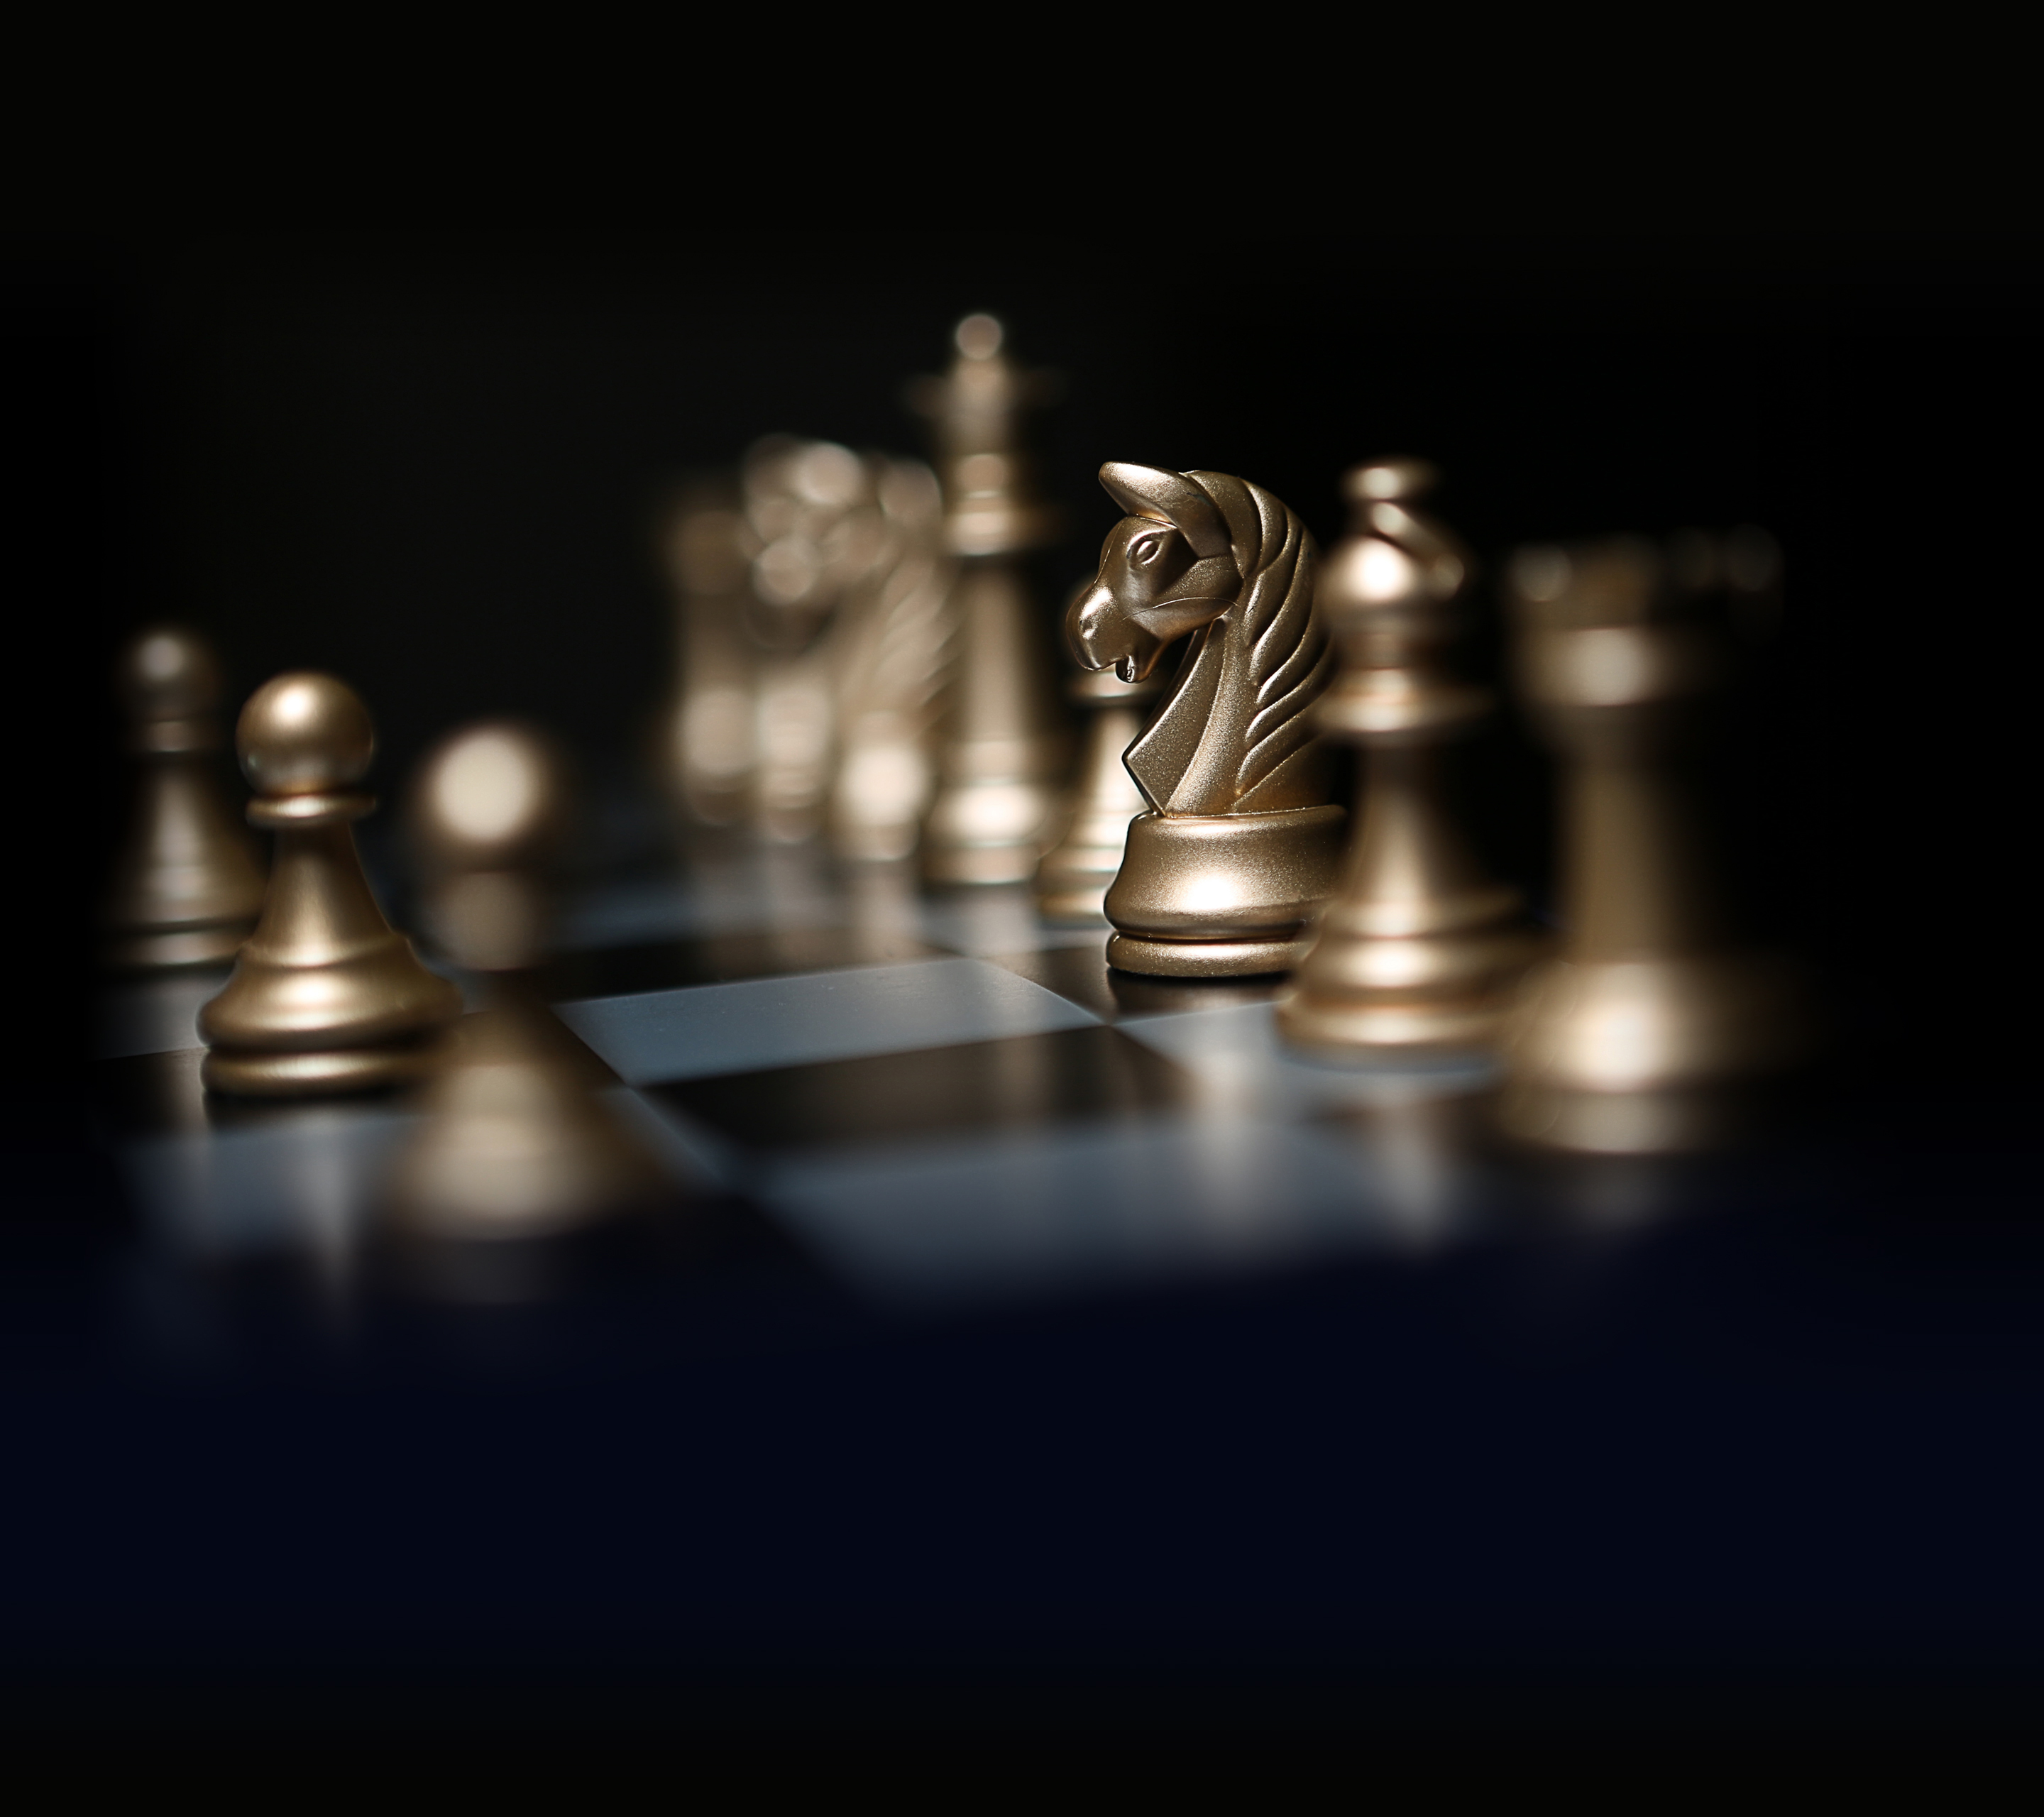 #Knight, #Huawei Mate #Stock, #Bokeh, #Chessboard, #Chess HD Wallpaper